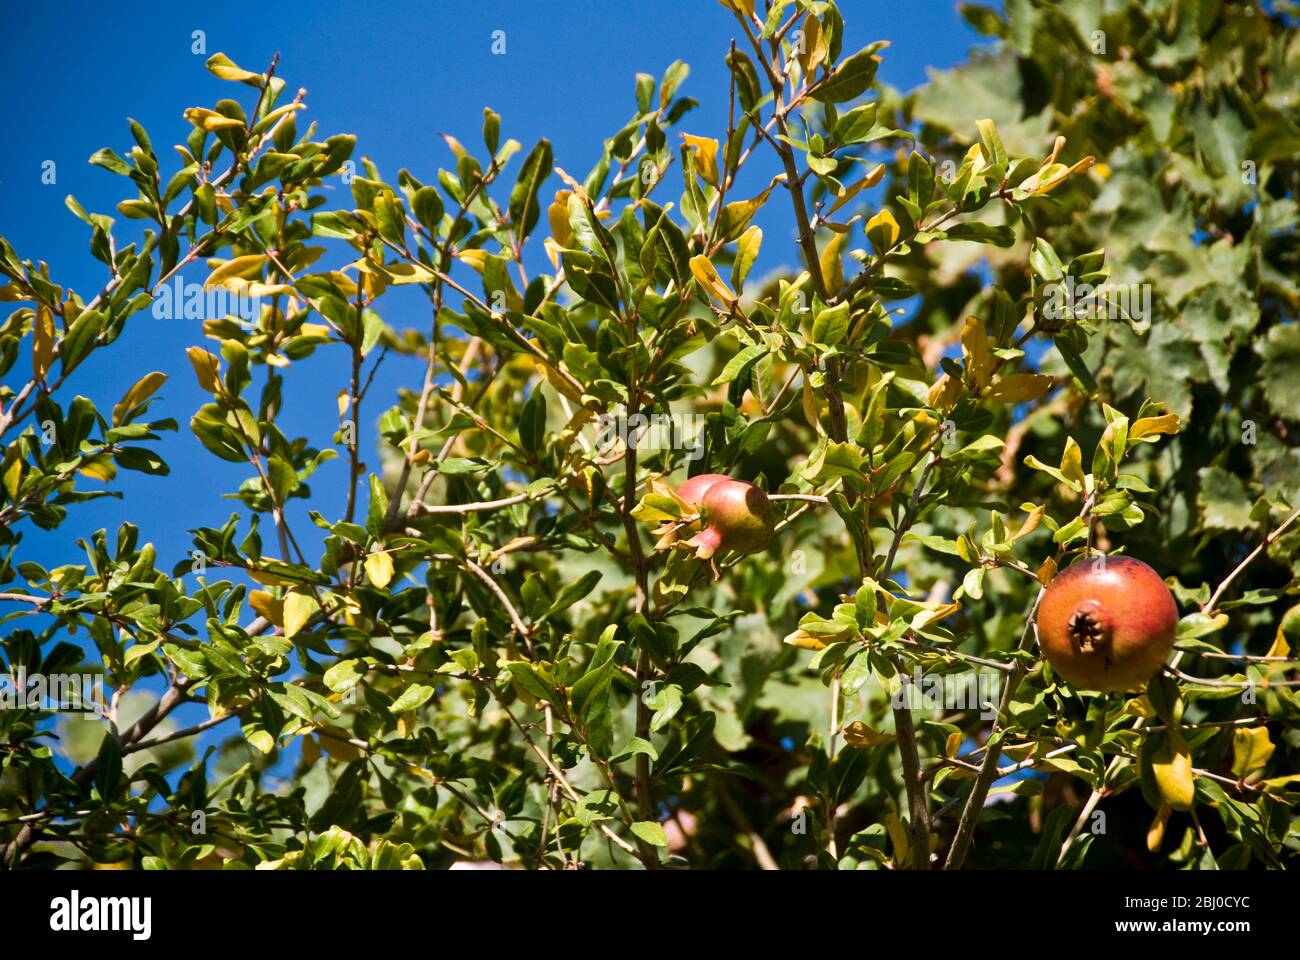 Granatäpfel wachsen in Bäumen im Süden Zyperns, gegen hellblauen Himmel - Stockfoto